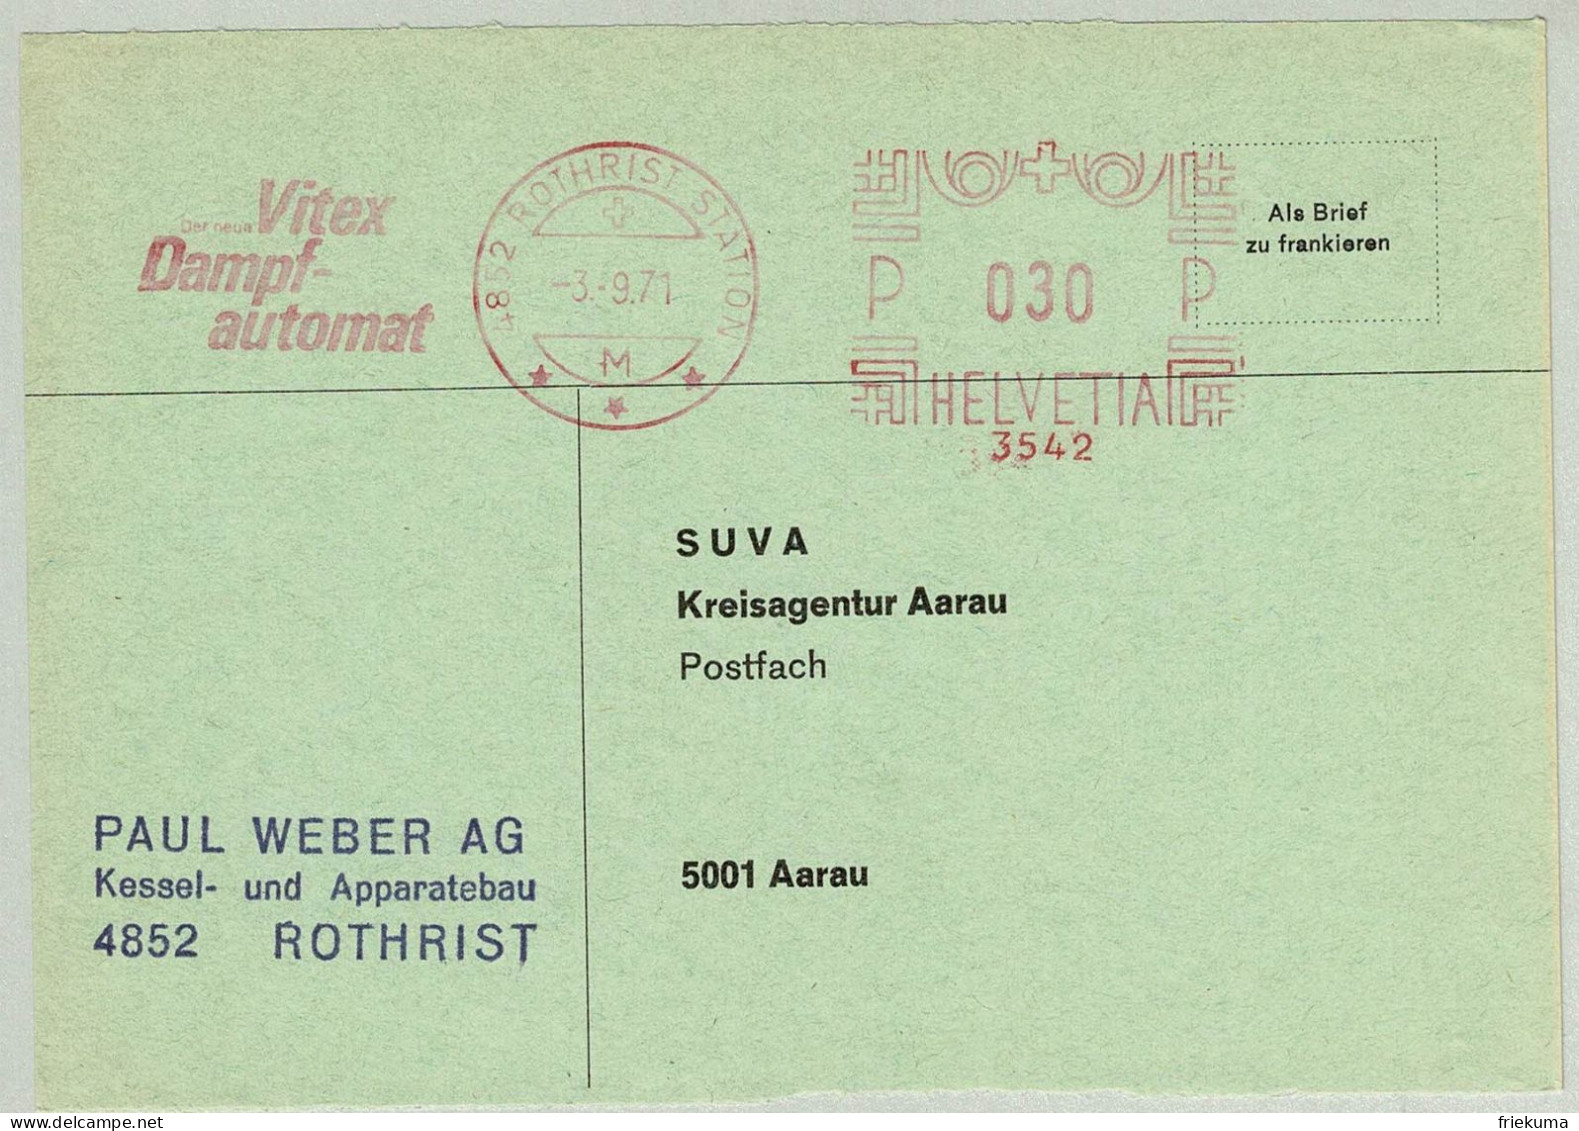 Schweiz / Helvetia 1971, Briefausschnitt Freistempel / EMA / Meterstamp Weber AG Rothrist - Aarau, Dampfautomat - Agua